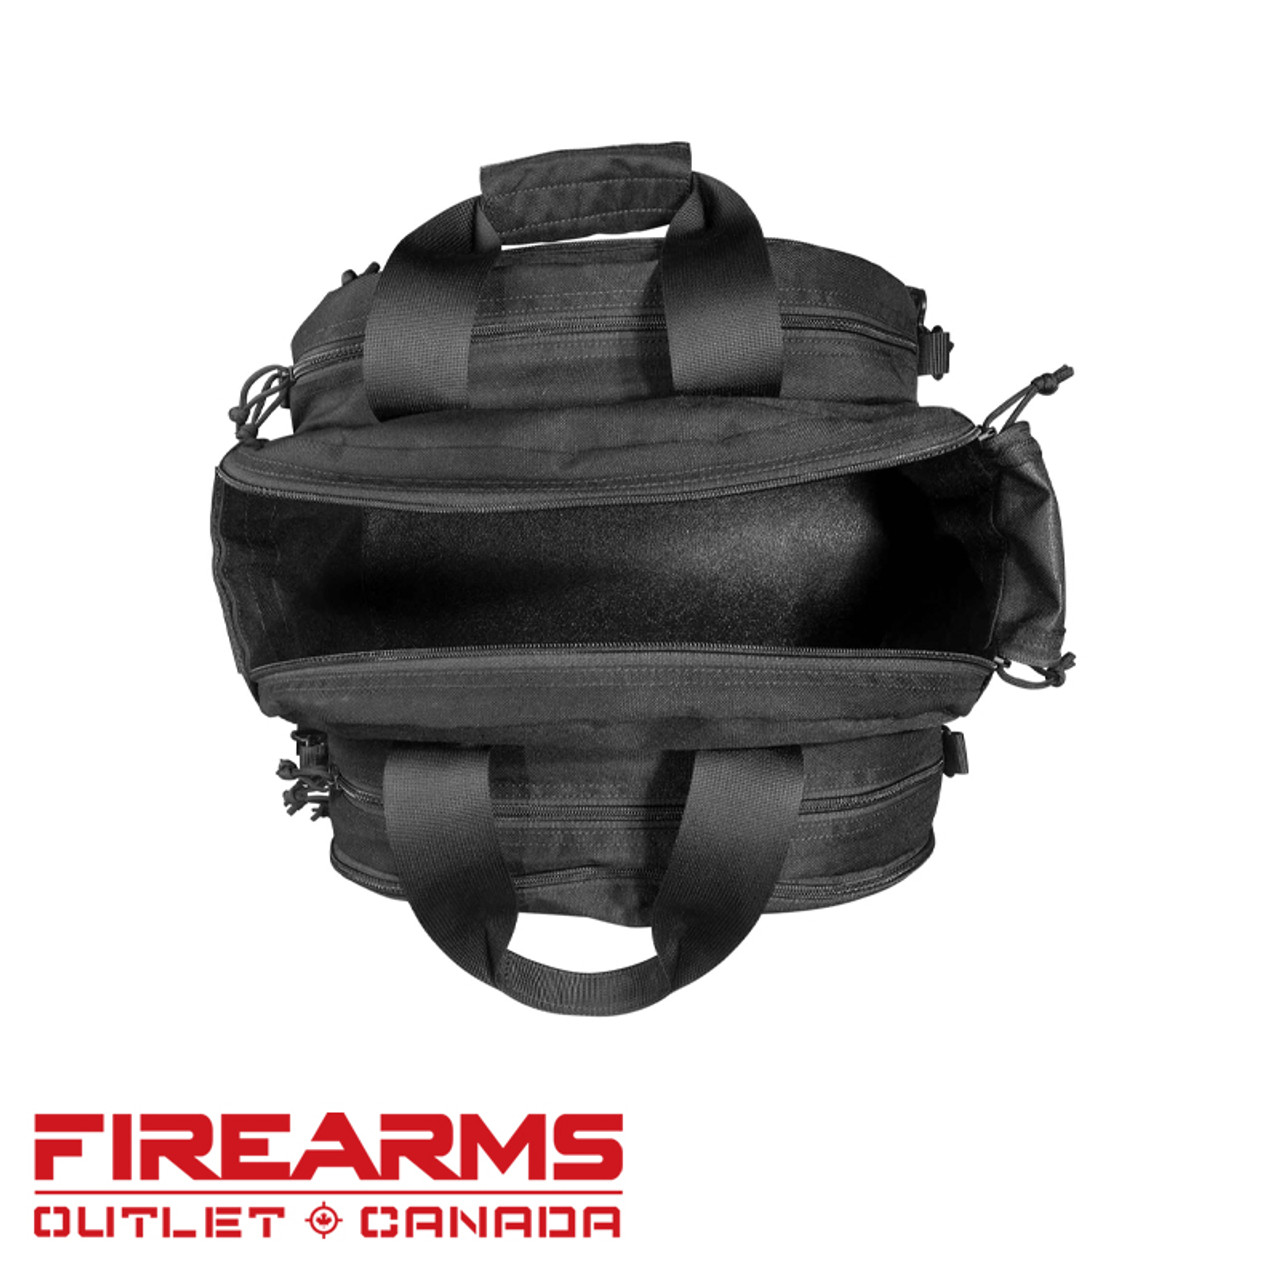 Beretta Tactical Range Bag - Black [BS851001890999UNI]